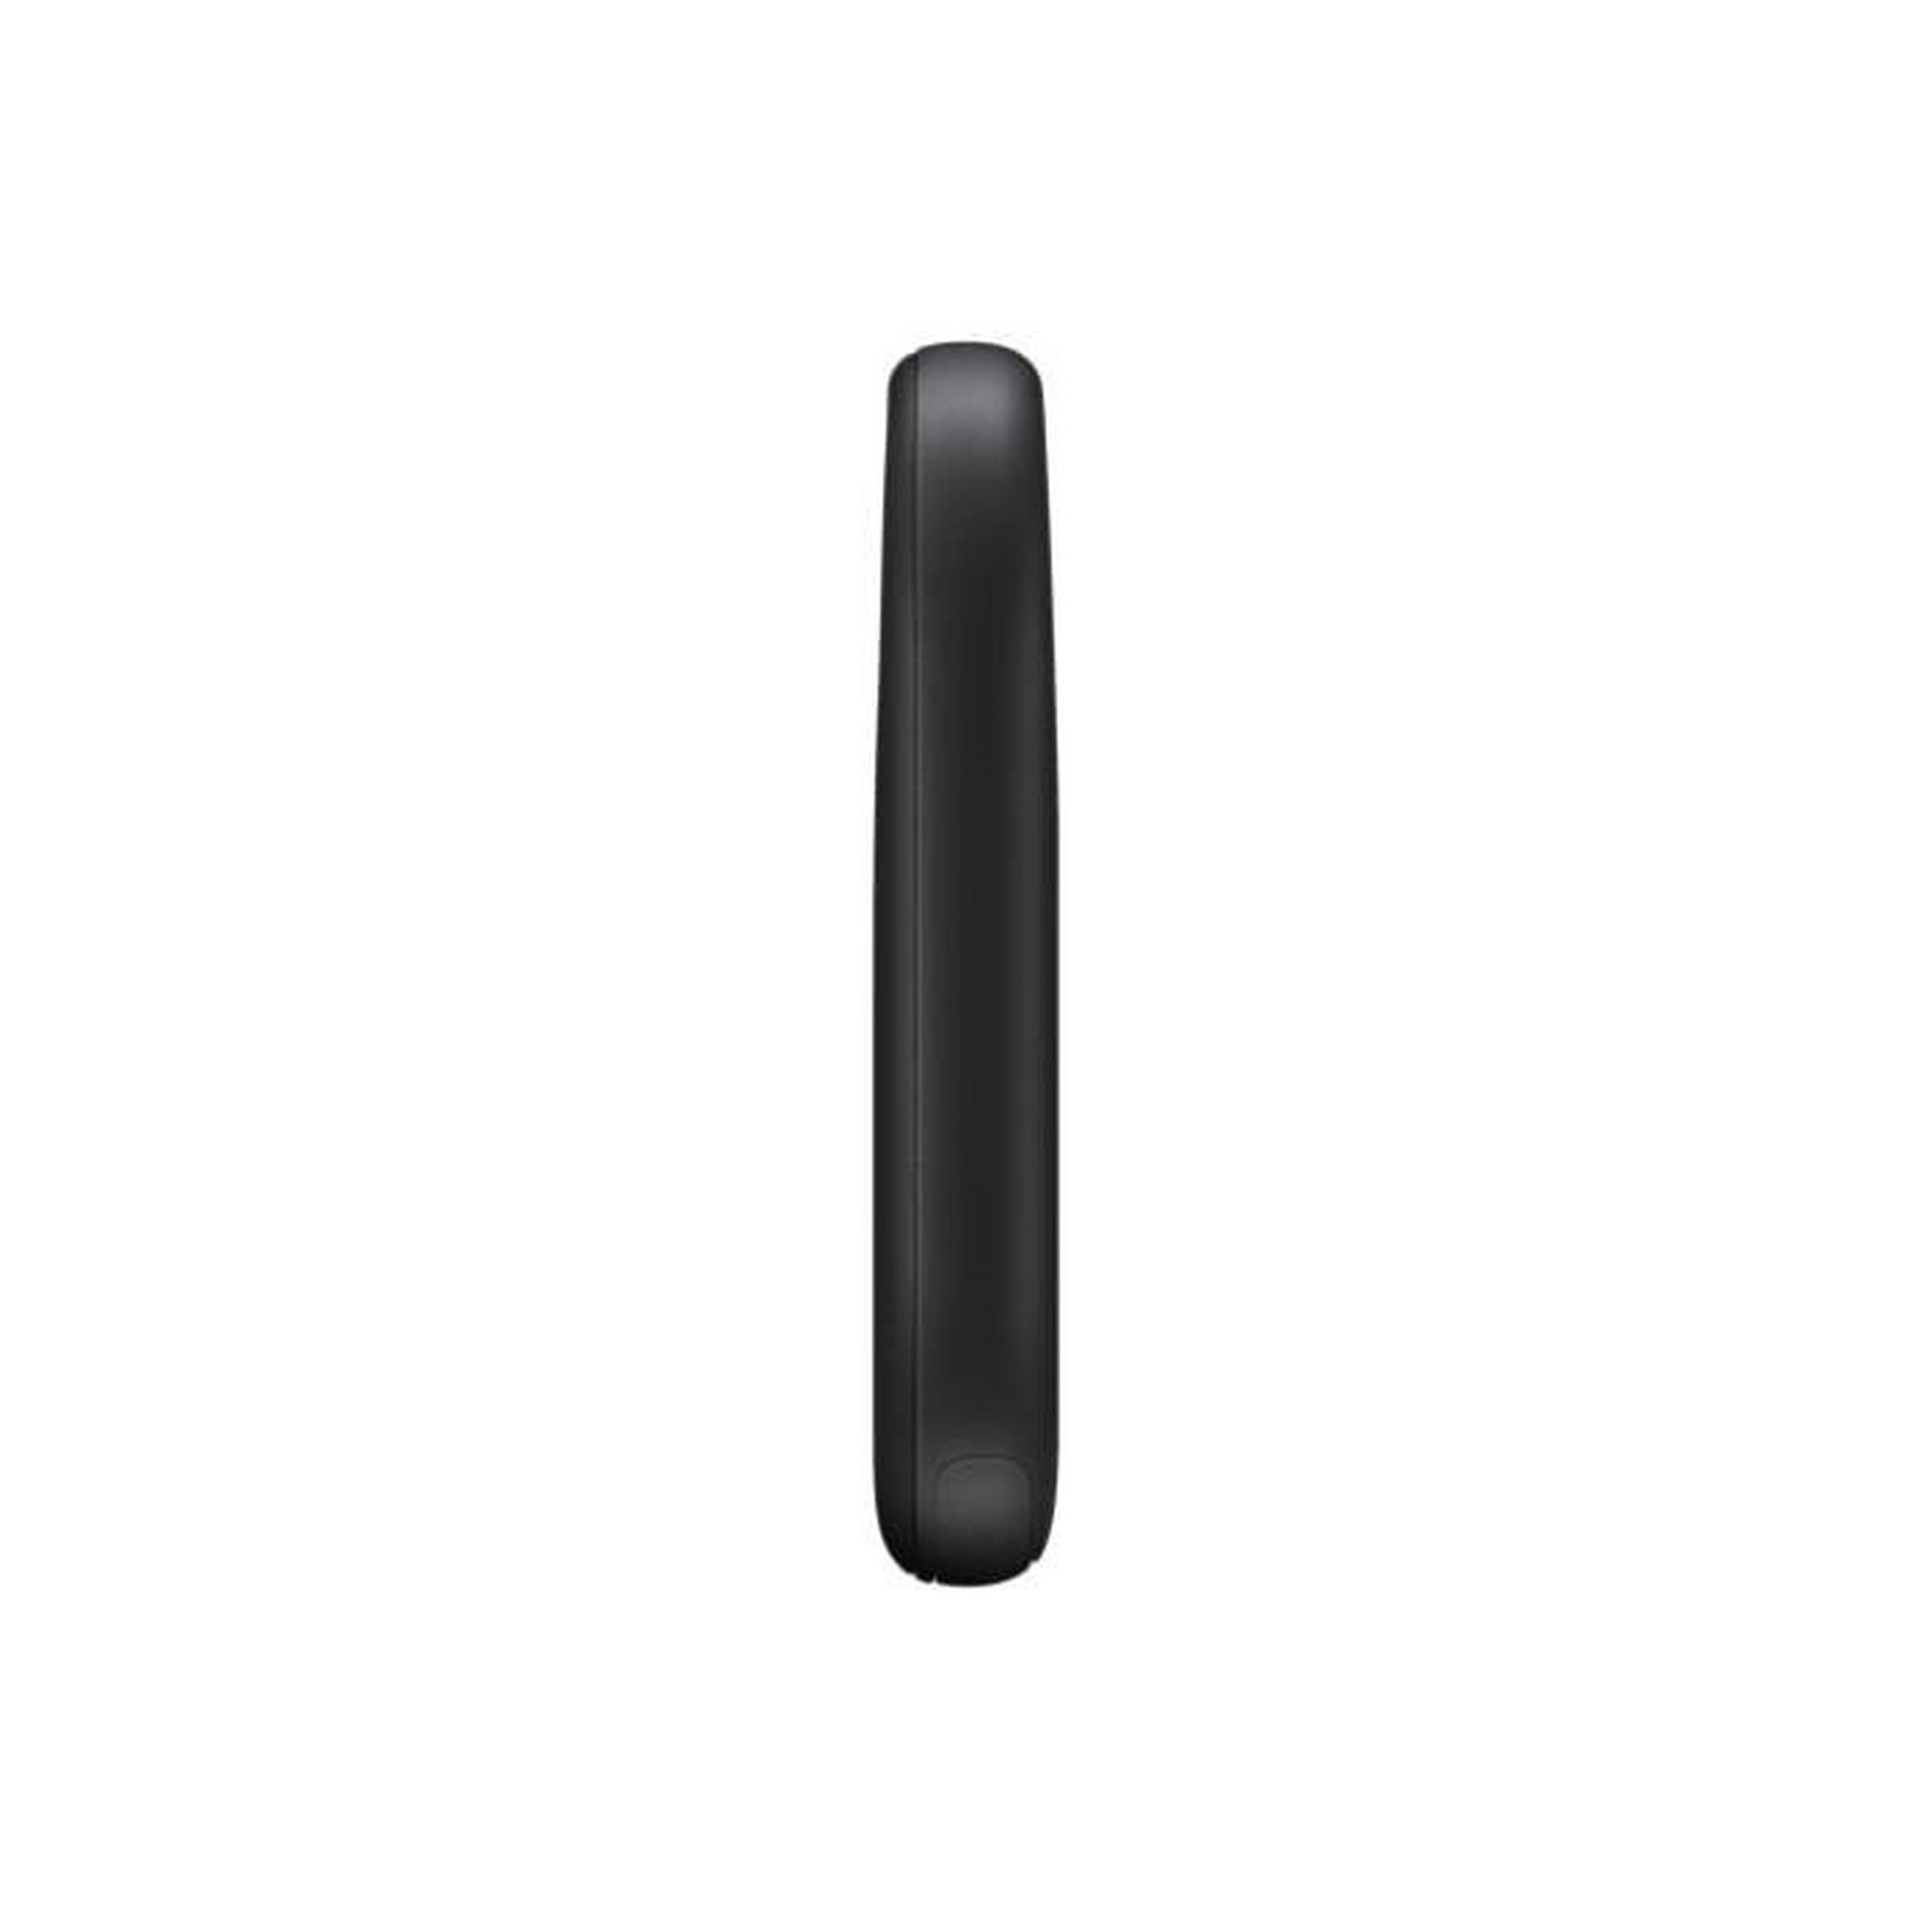 Samsung Galaxy SmartTag2 – Black